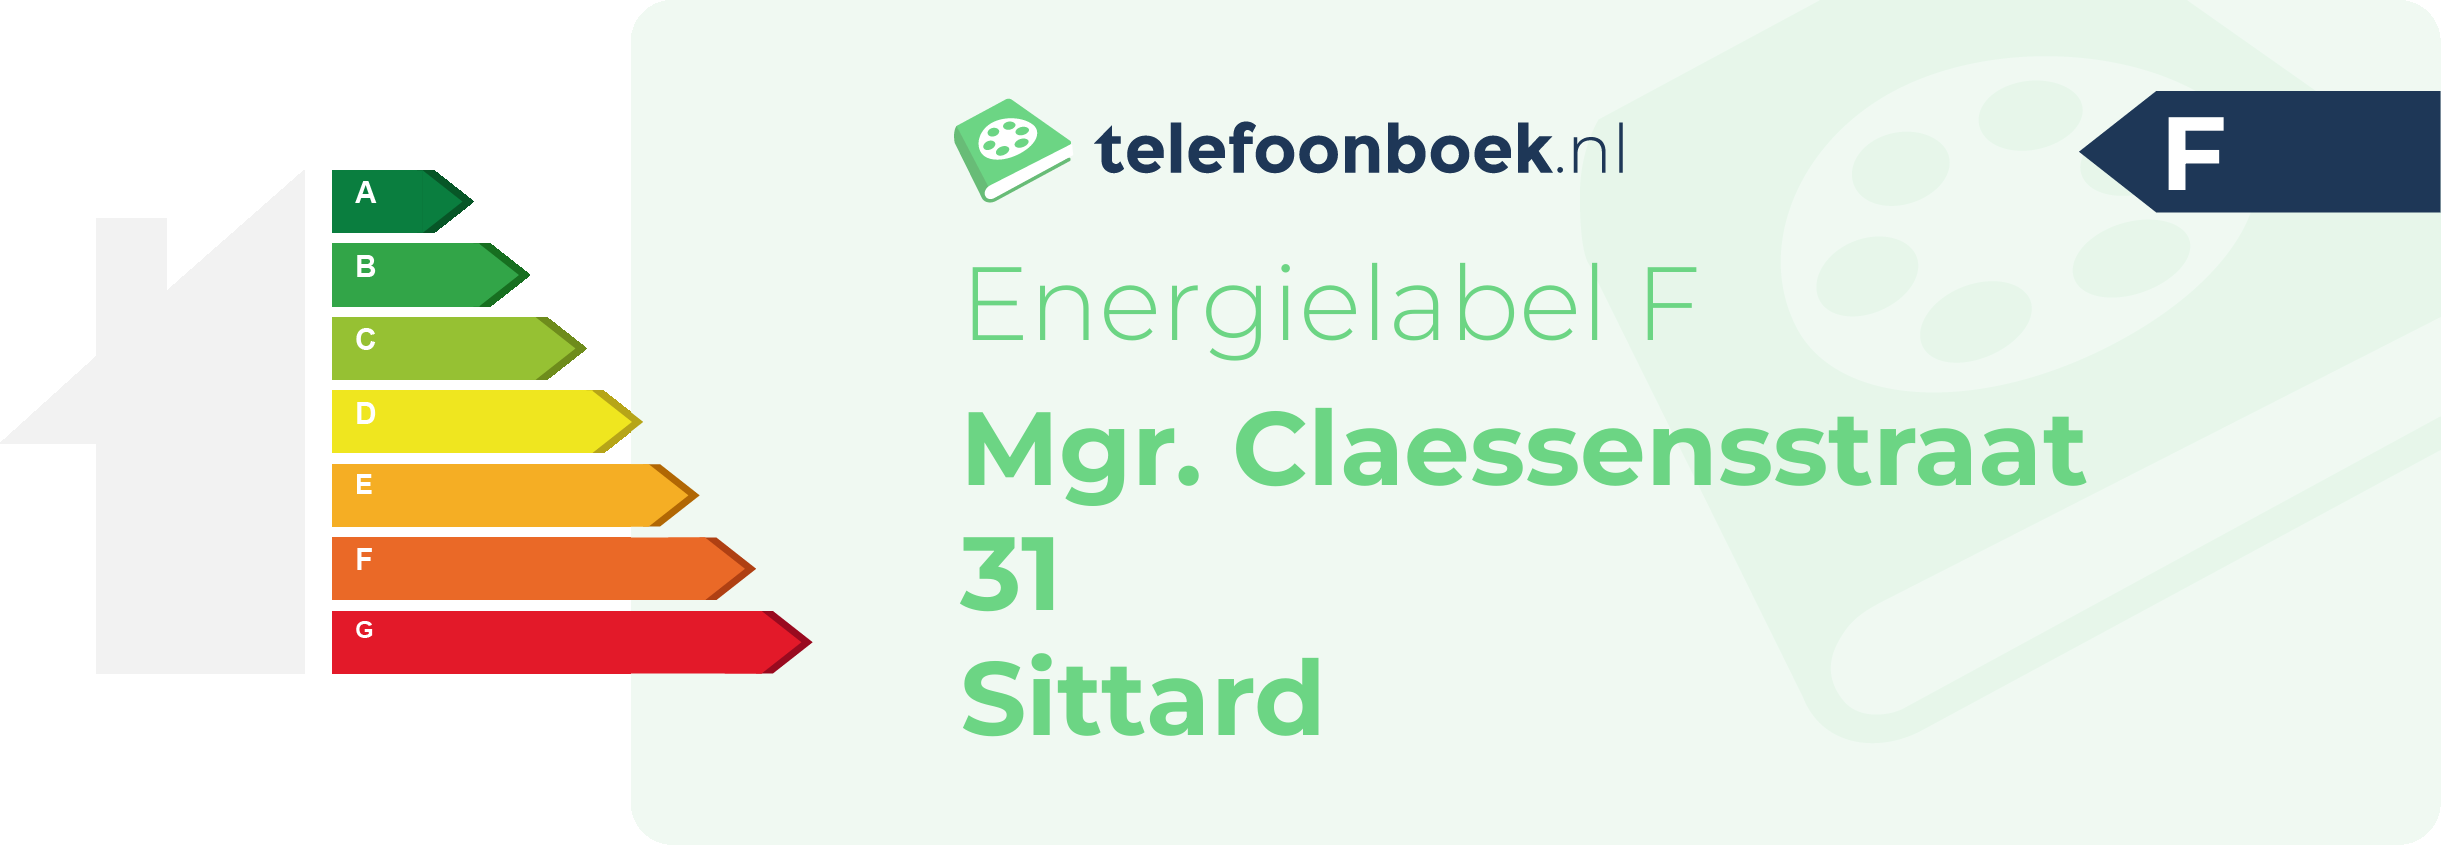 Energielabel Mgr. Claessensstraat 31 Sittard